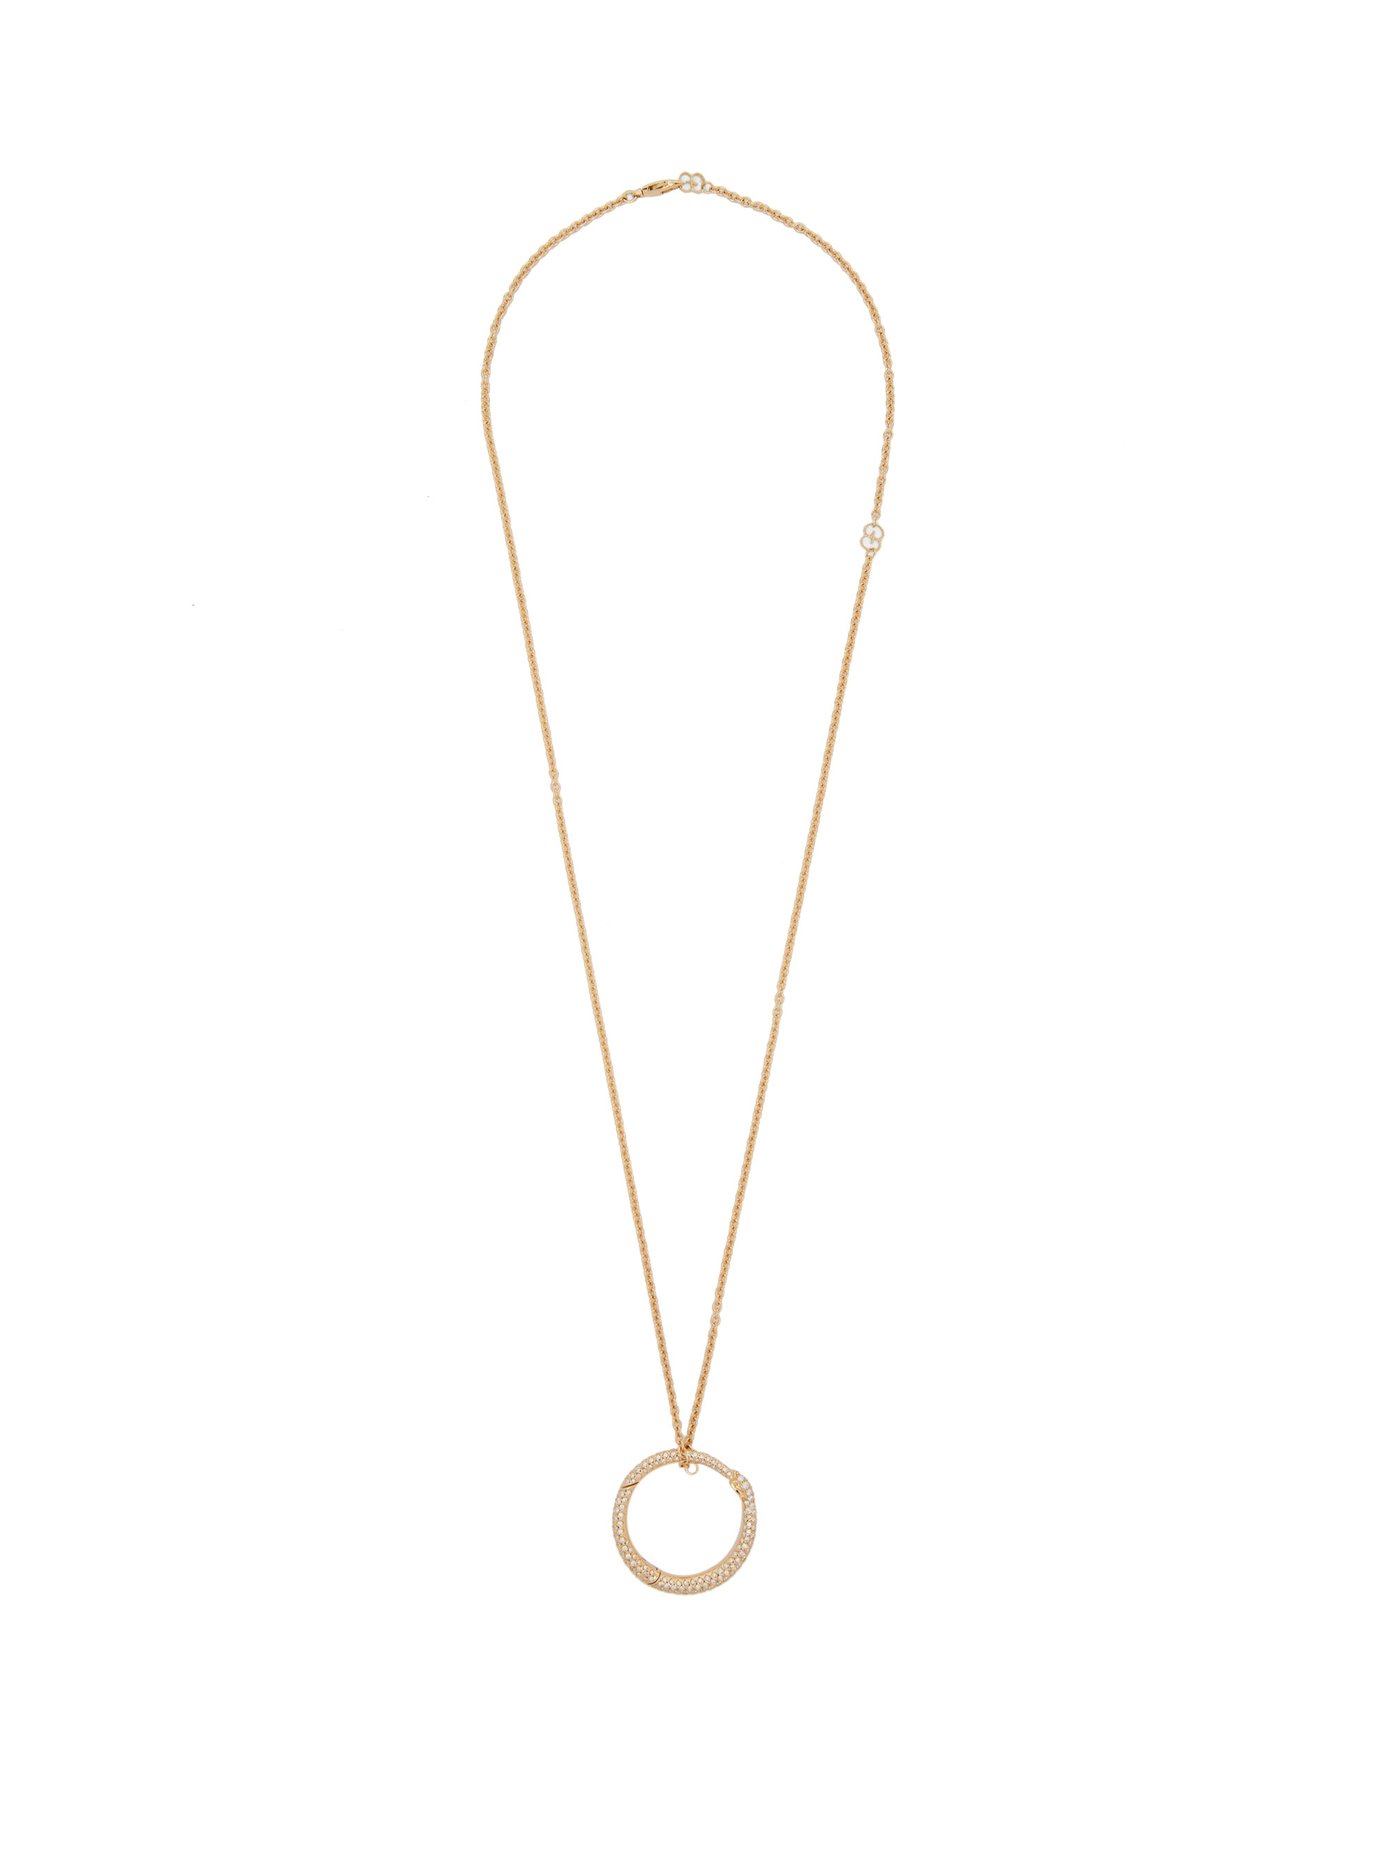 ouroboros necklace gucci